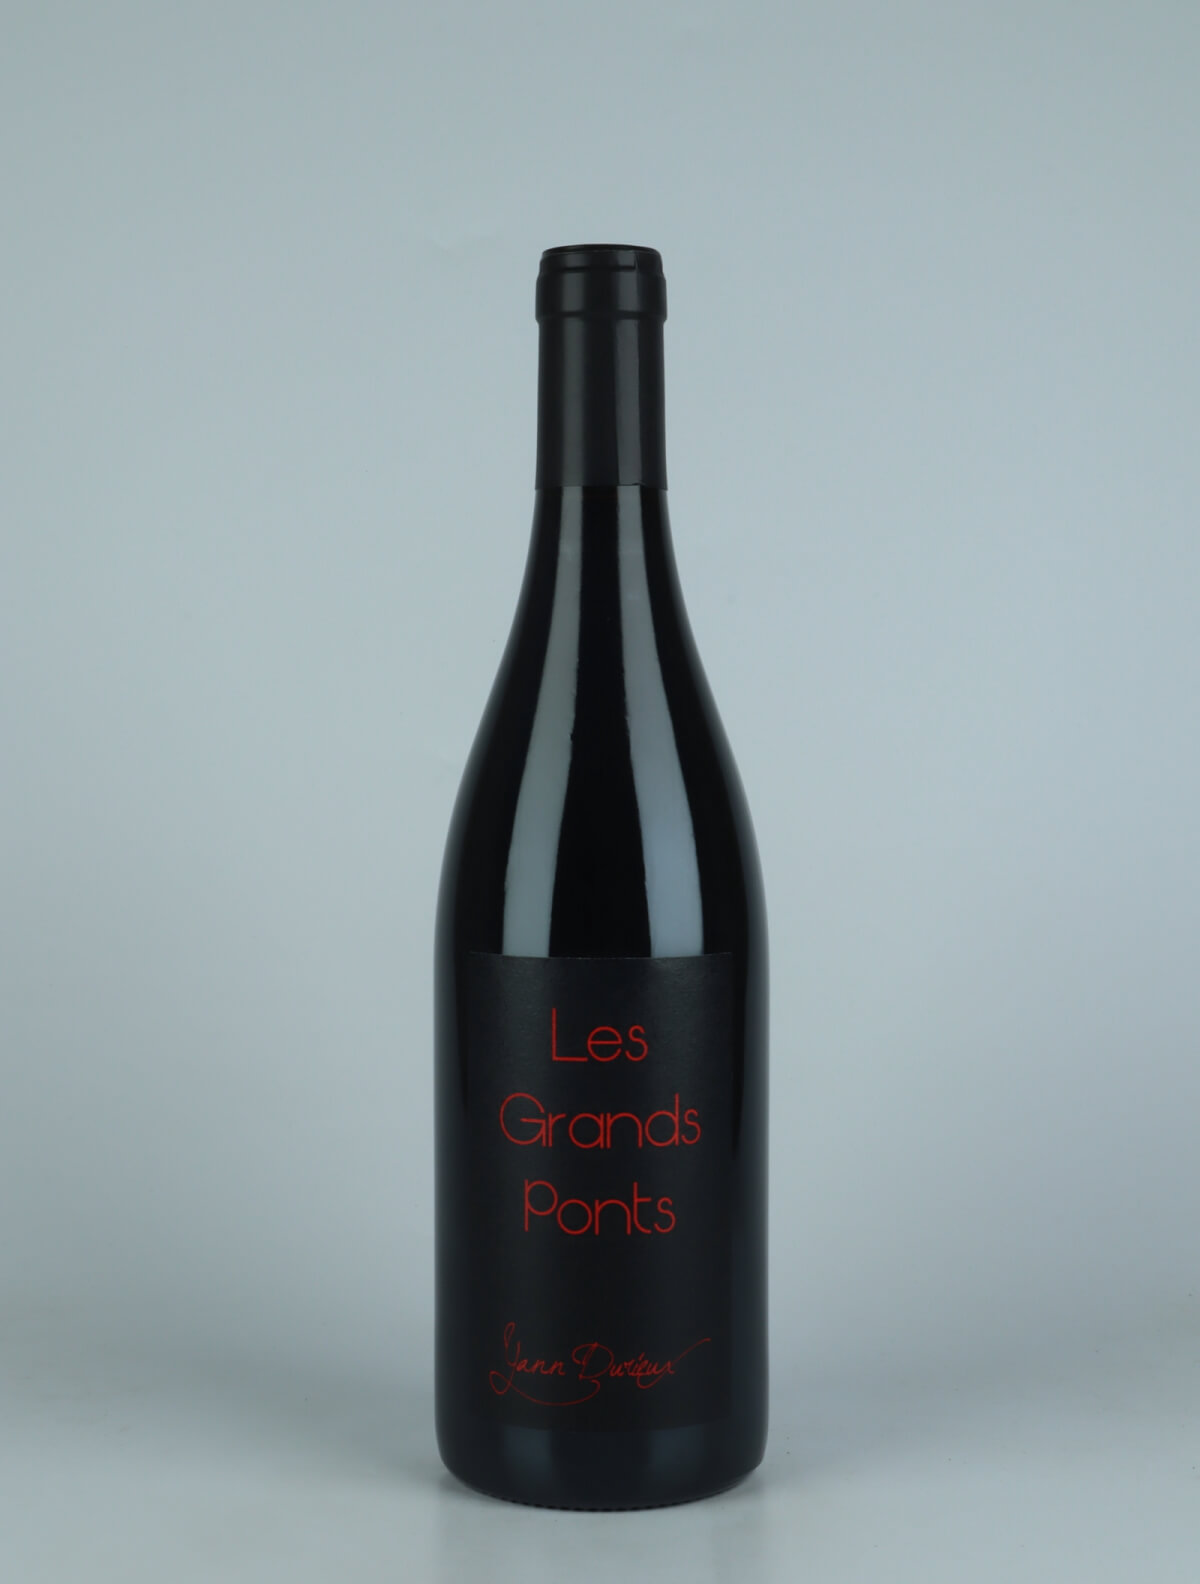 En flaske 2020 Les Grands Ponts Rødvin fra Yann Durieux, Bourgogne i Frankrig